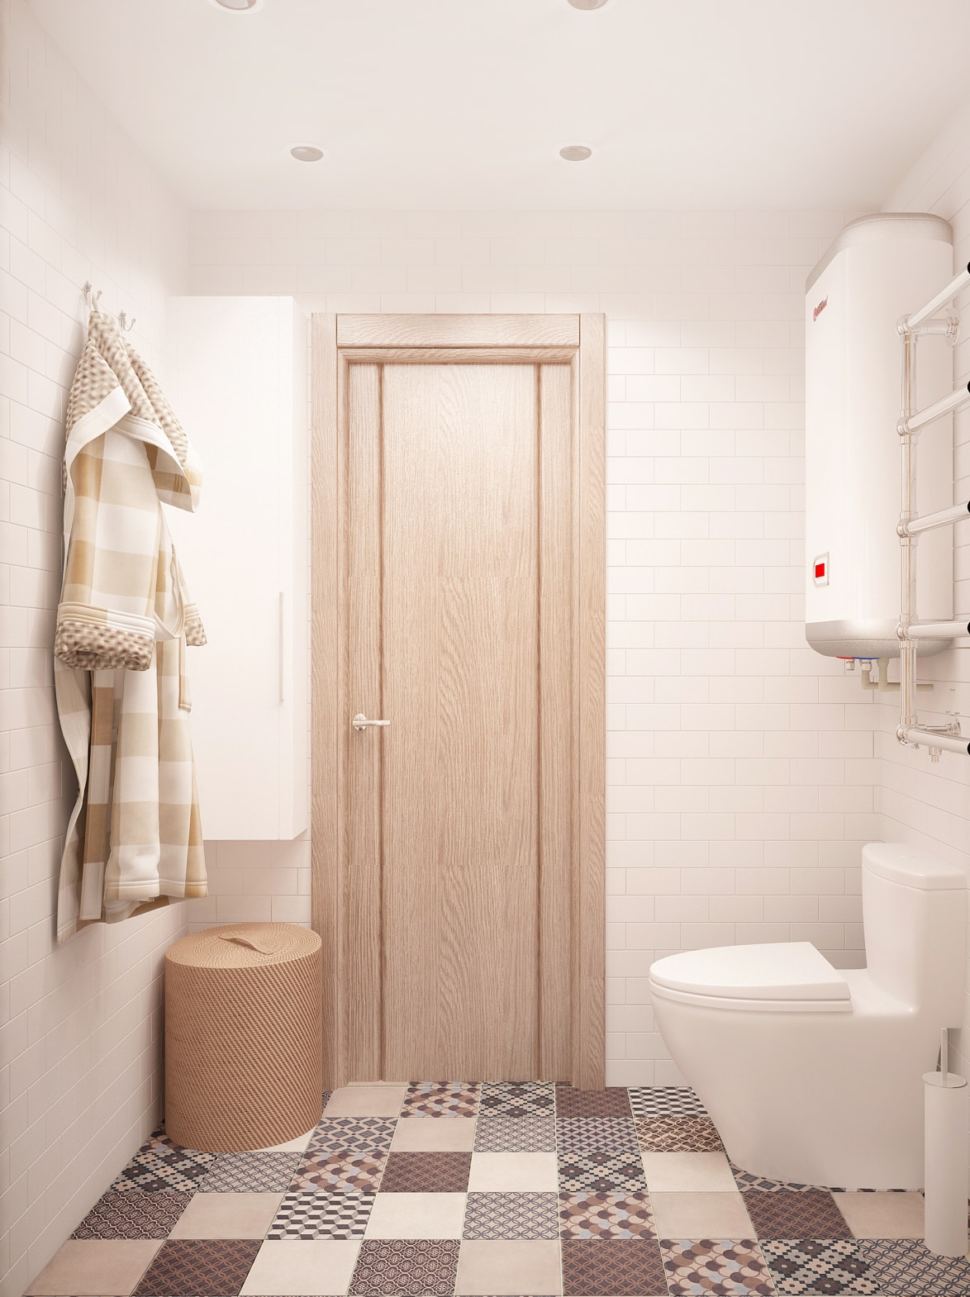 Дизайн ванной комнаты 3 кв.м в теплых оттенках, белый унитаз, водонагреватель, светильники, керамическая плитка, плитка с орнаментом